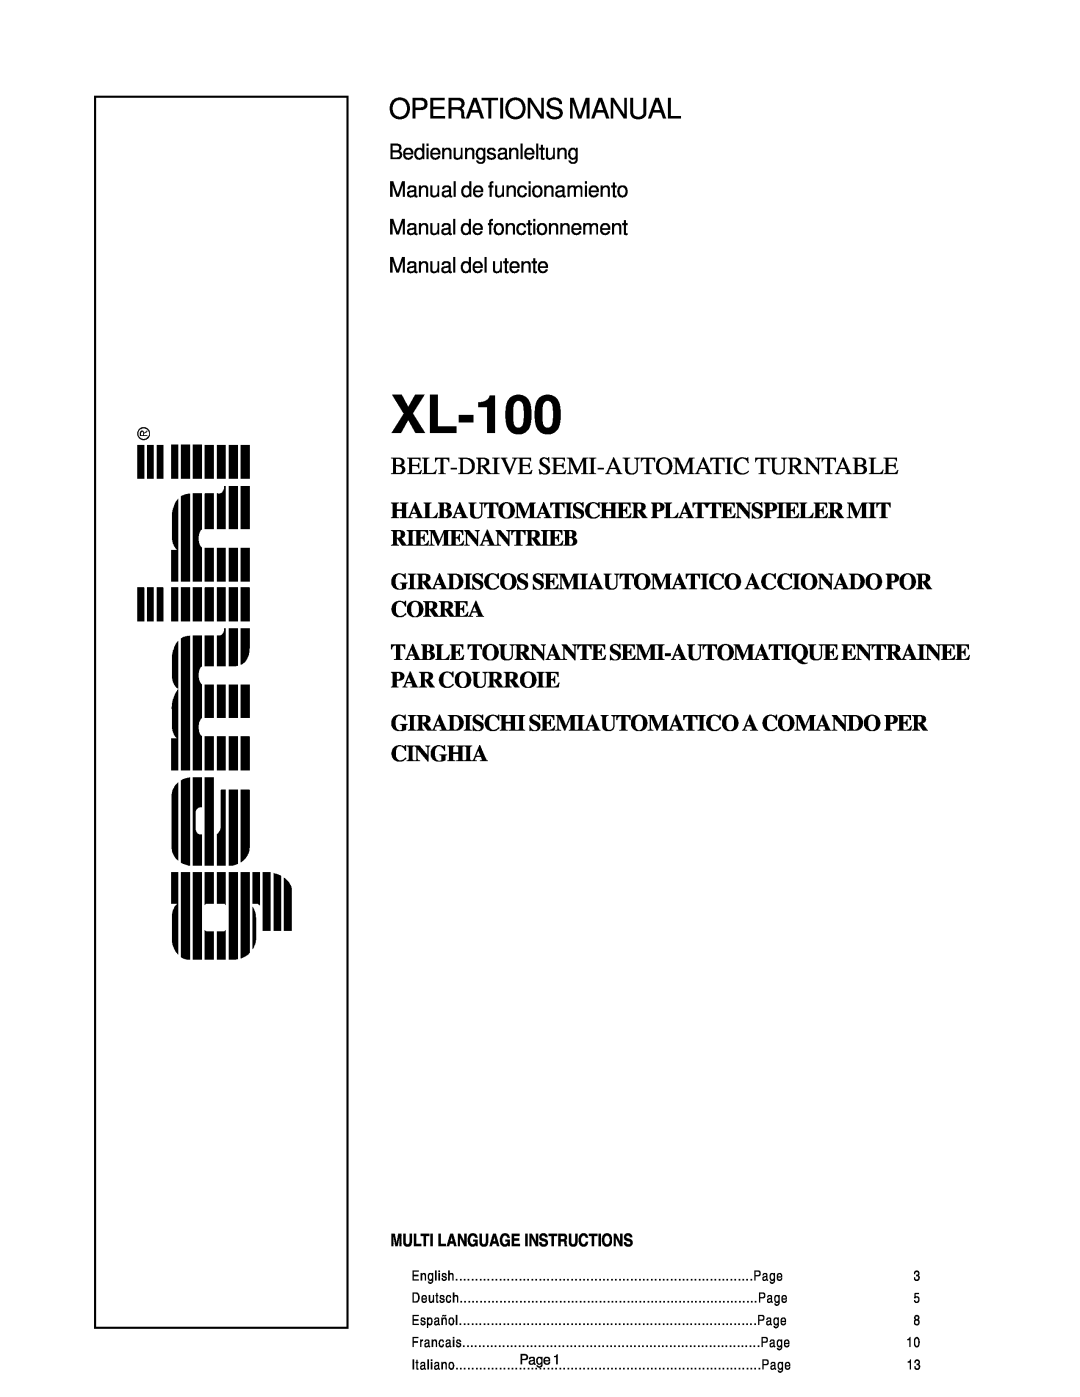 Gemini XL-100 manual Giradiscos Semiautomatico Accionado Por Correa, Giradischi Semiautomatico A Comando Per Cinghia 